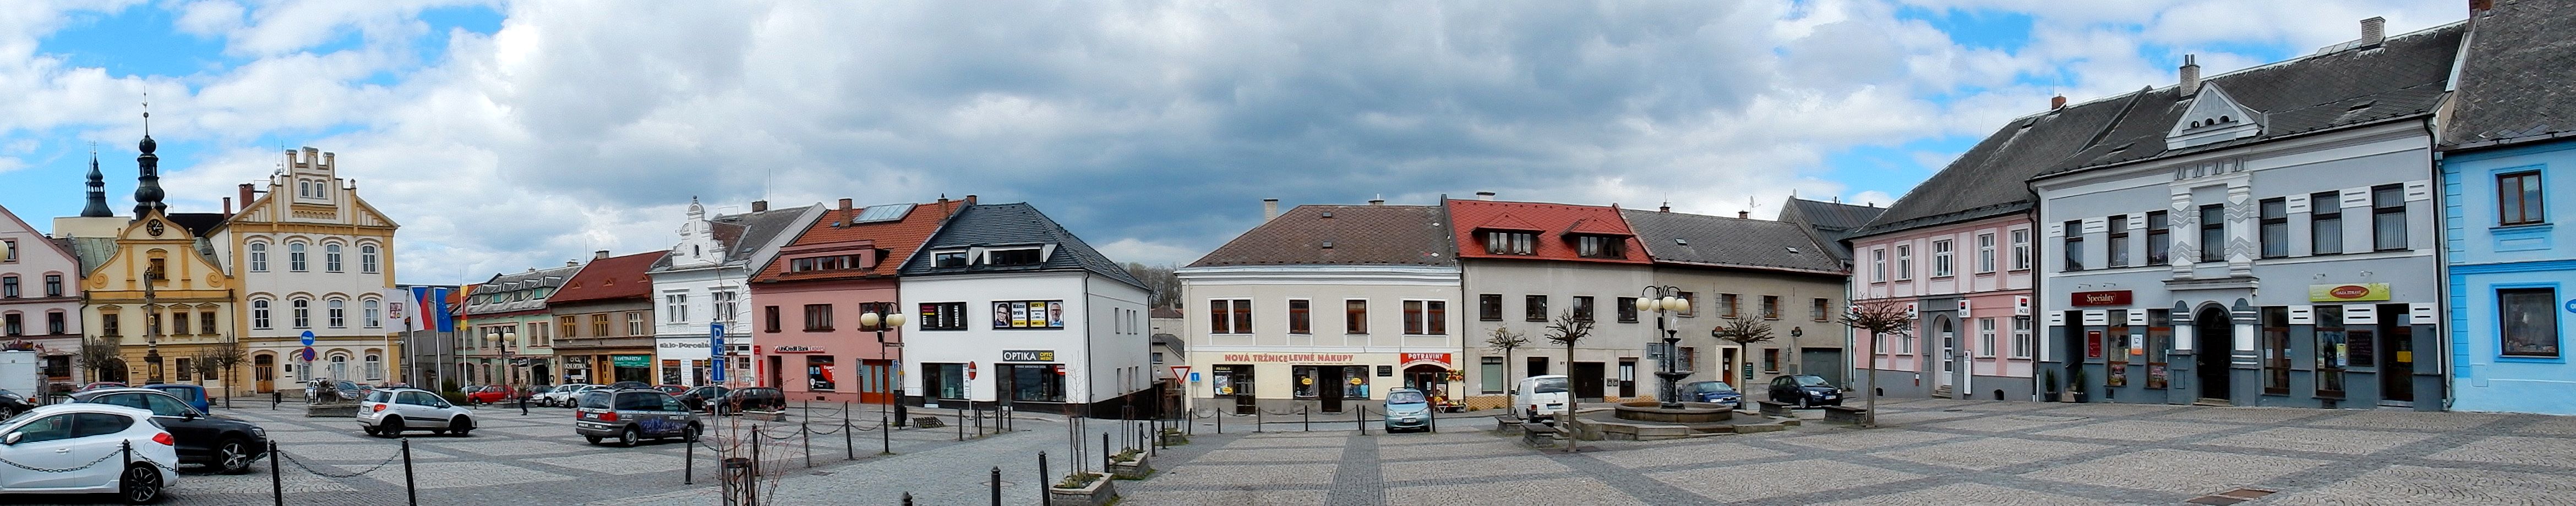 Hauptplatz von Česká Třebová